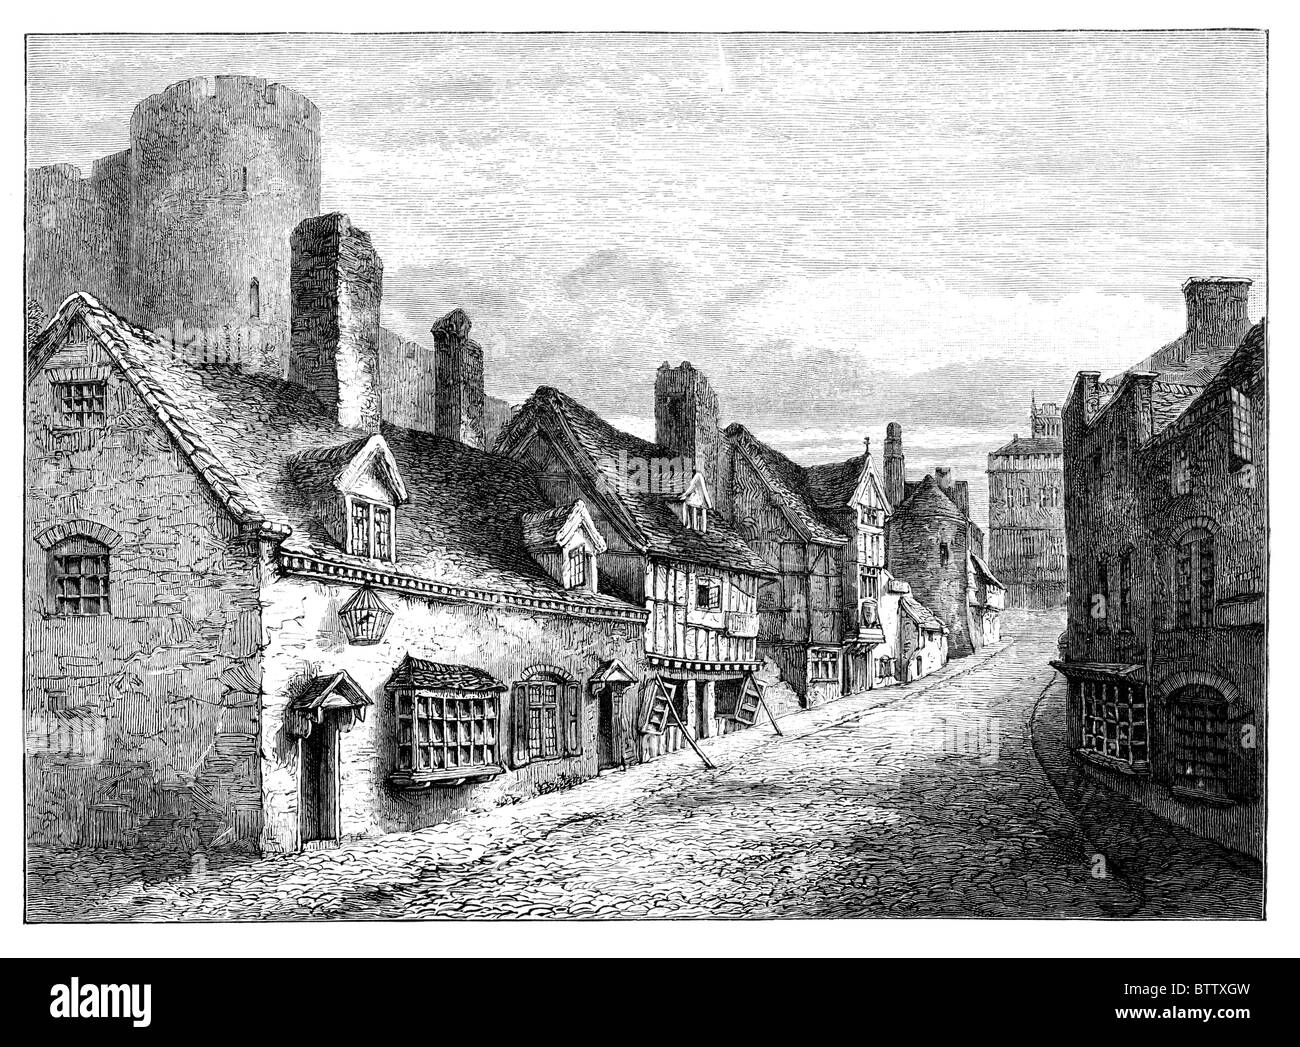 Porte du château de Shrewsbury, Shropshire, tel qu'il aurait pu être publié au 19e siècle. Illustration noir et blanc ; Banque D'Images